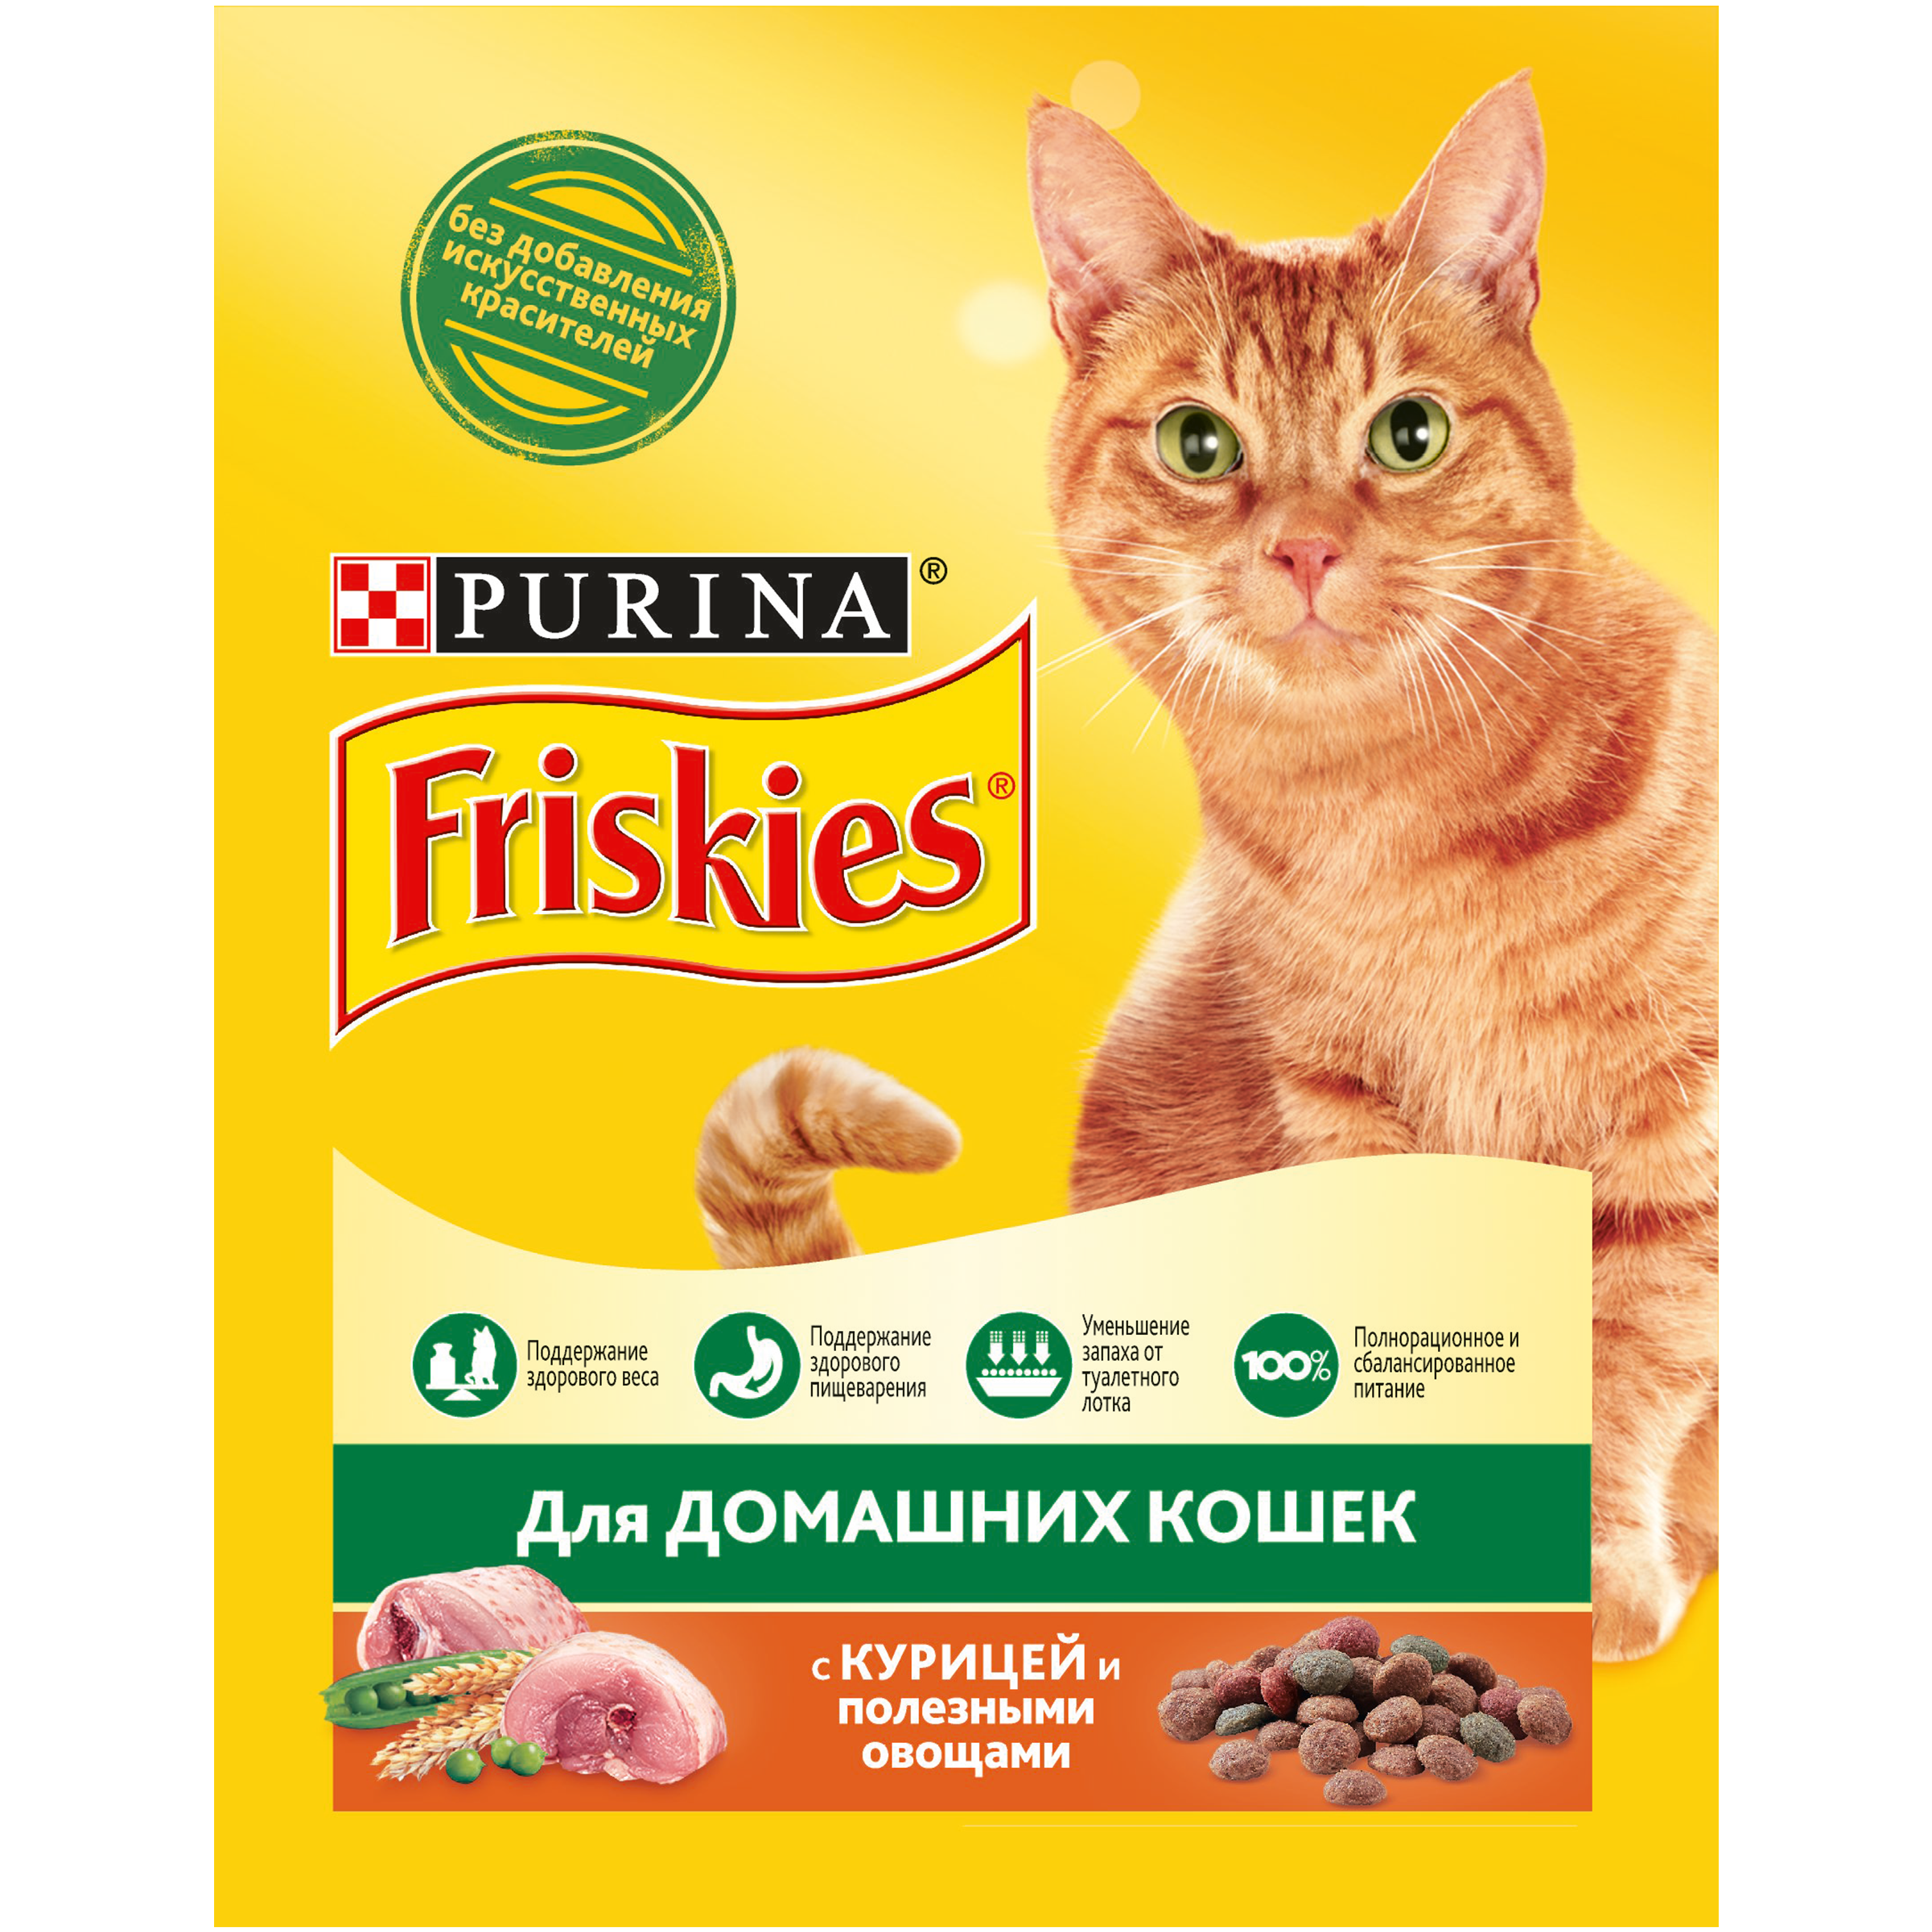 Корм фрискис (friskies) для кошек — отзывы владельцев, ветеринаров